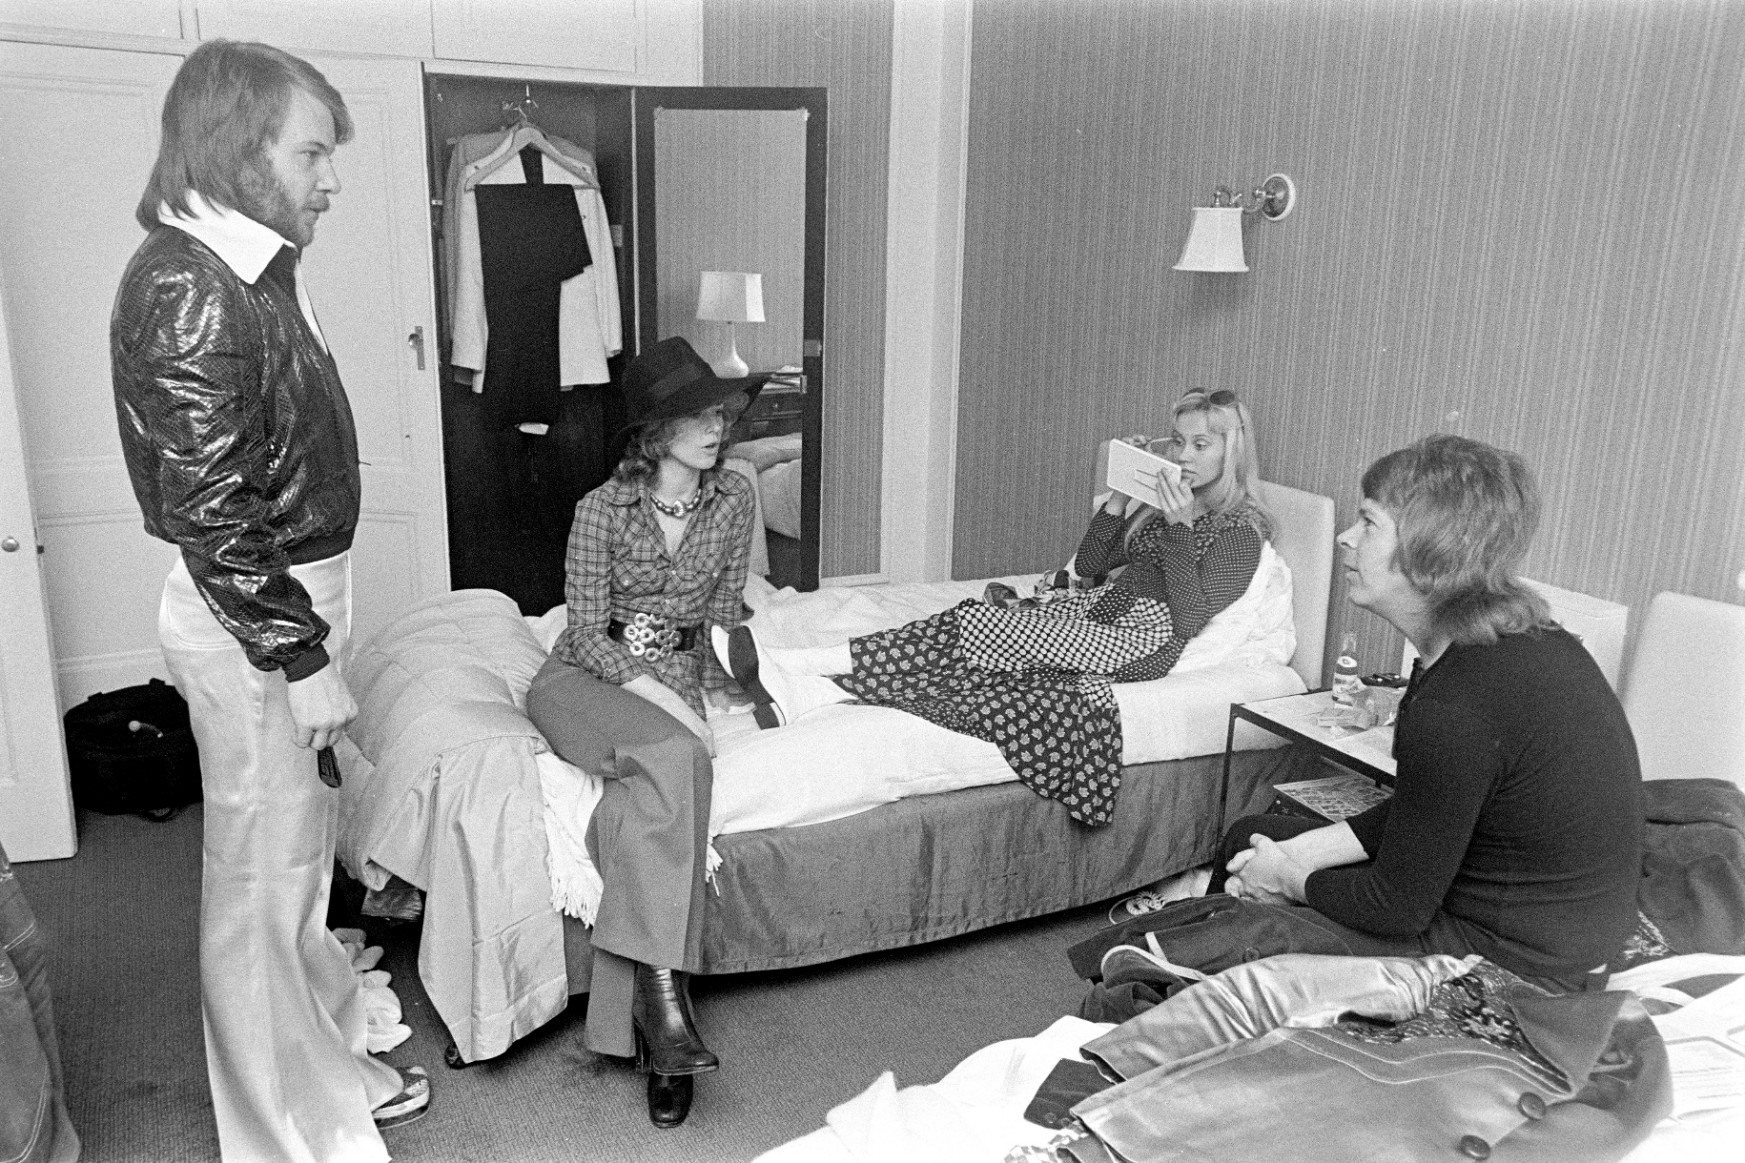 Az ABBA nemcsak egy sikertörténet, hanem egy tanulságos mese is a családról